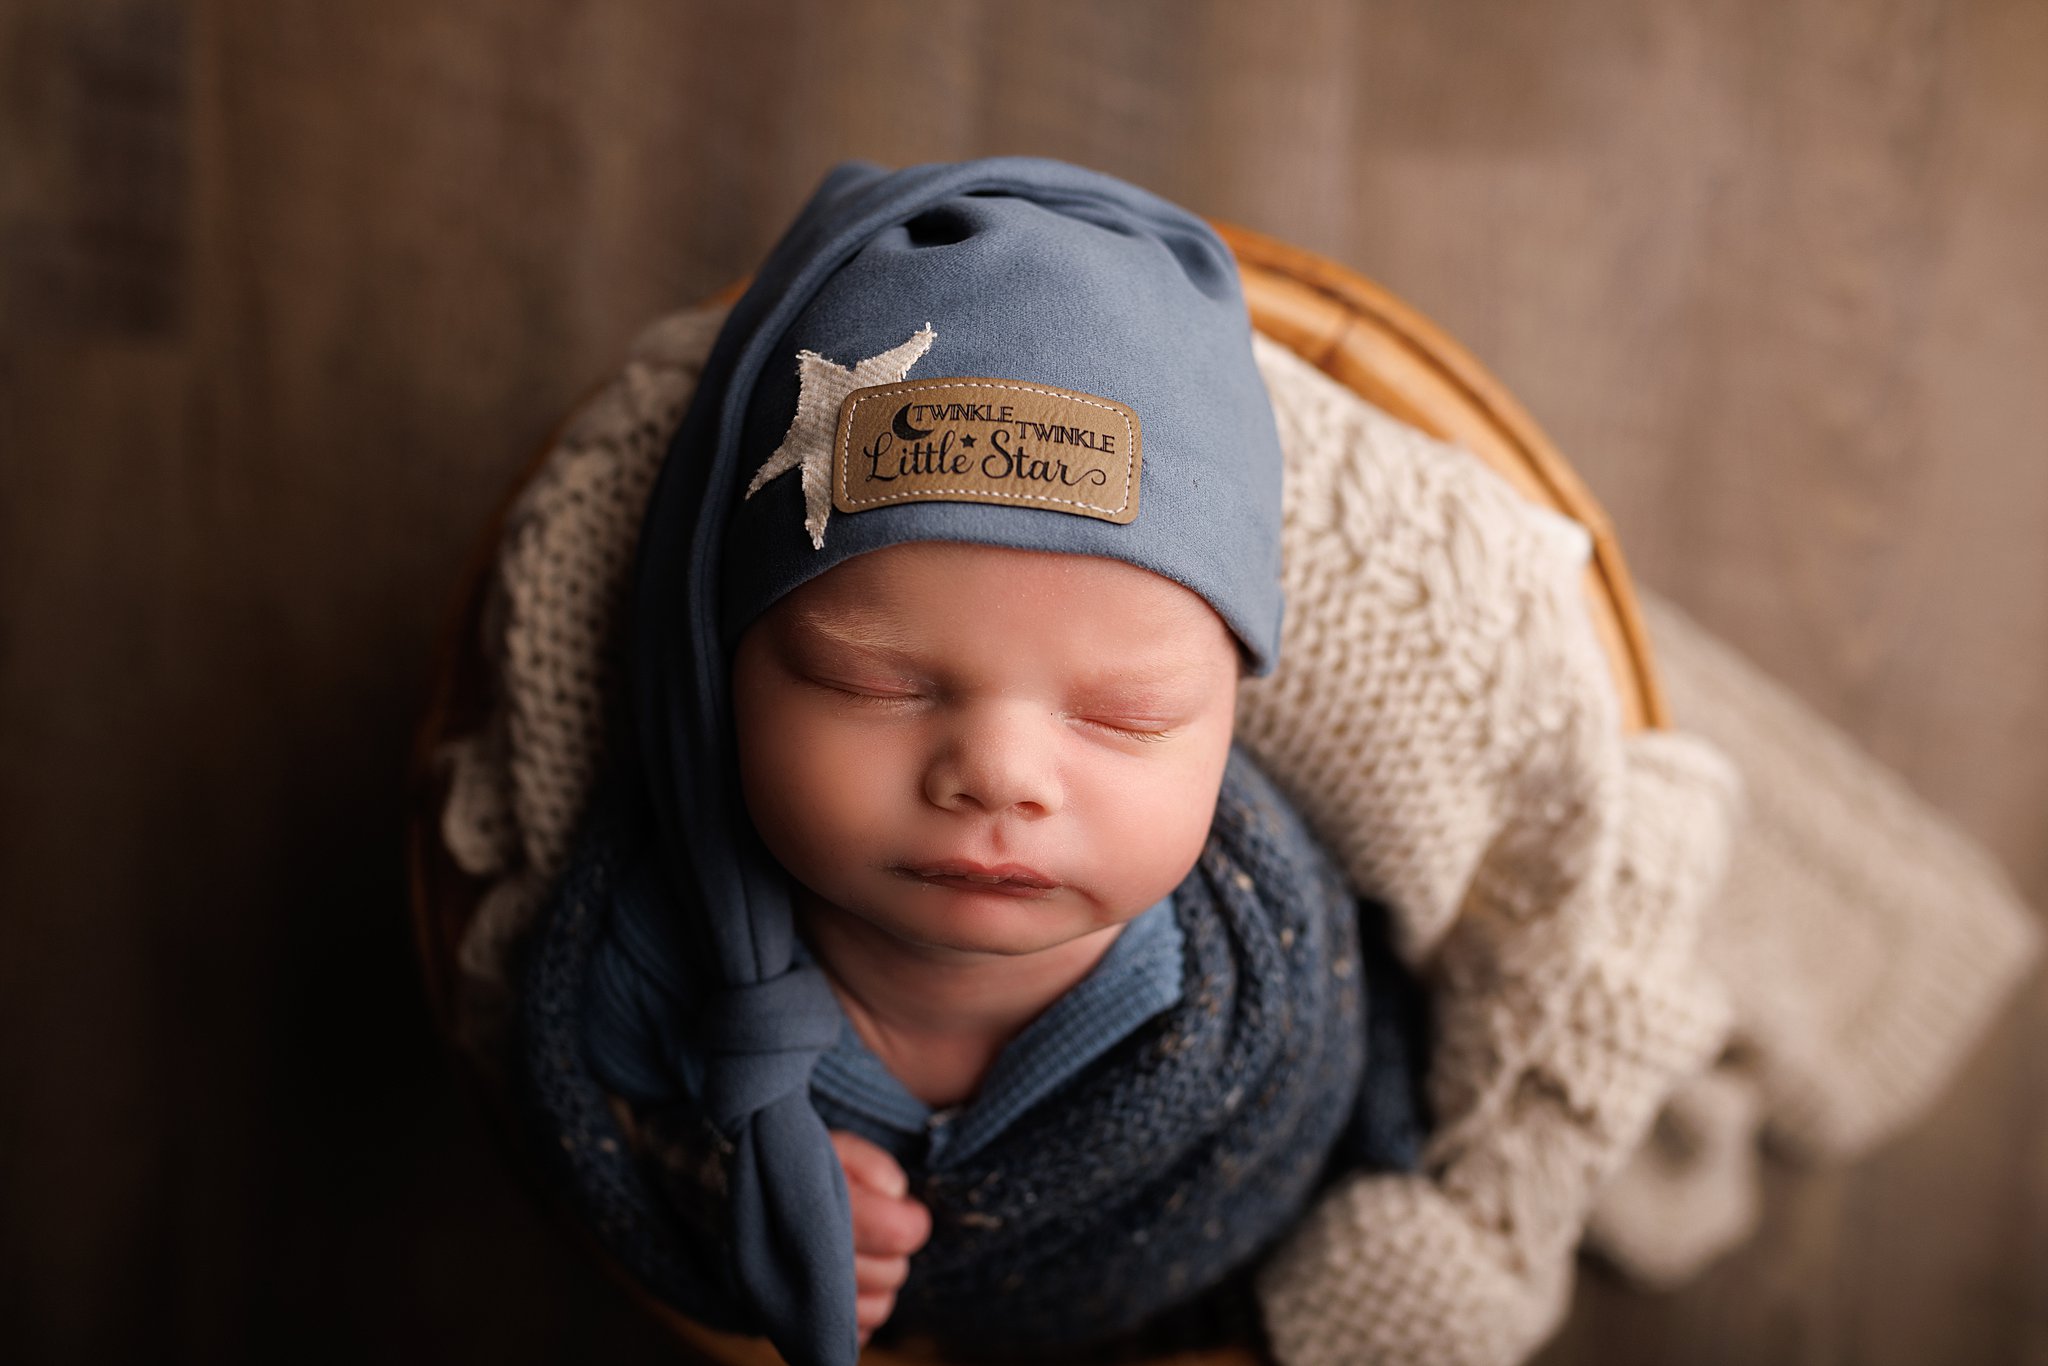 A newborn baby sleeps in a basket while wearing a twinkle twinkle little star sleep cap kol kid